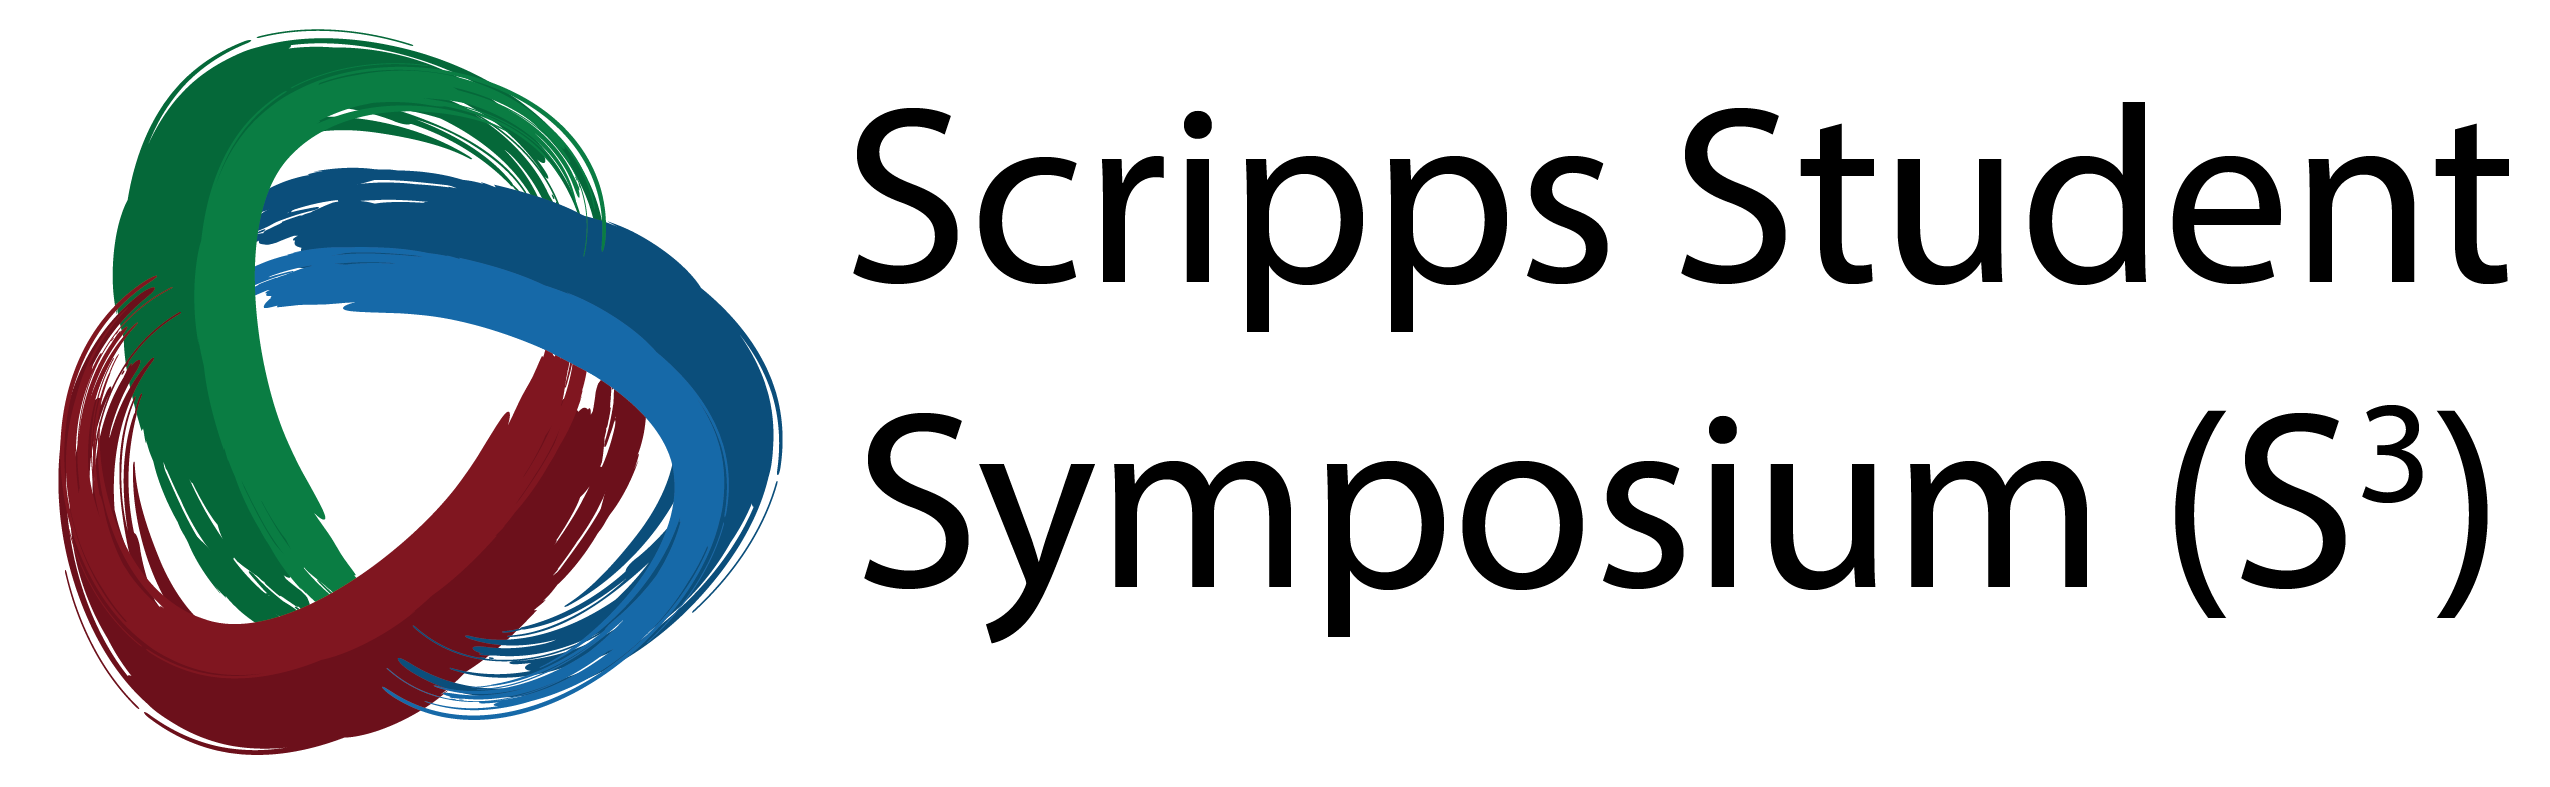 Scripps Student Symposium